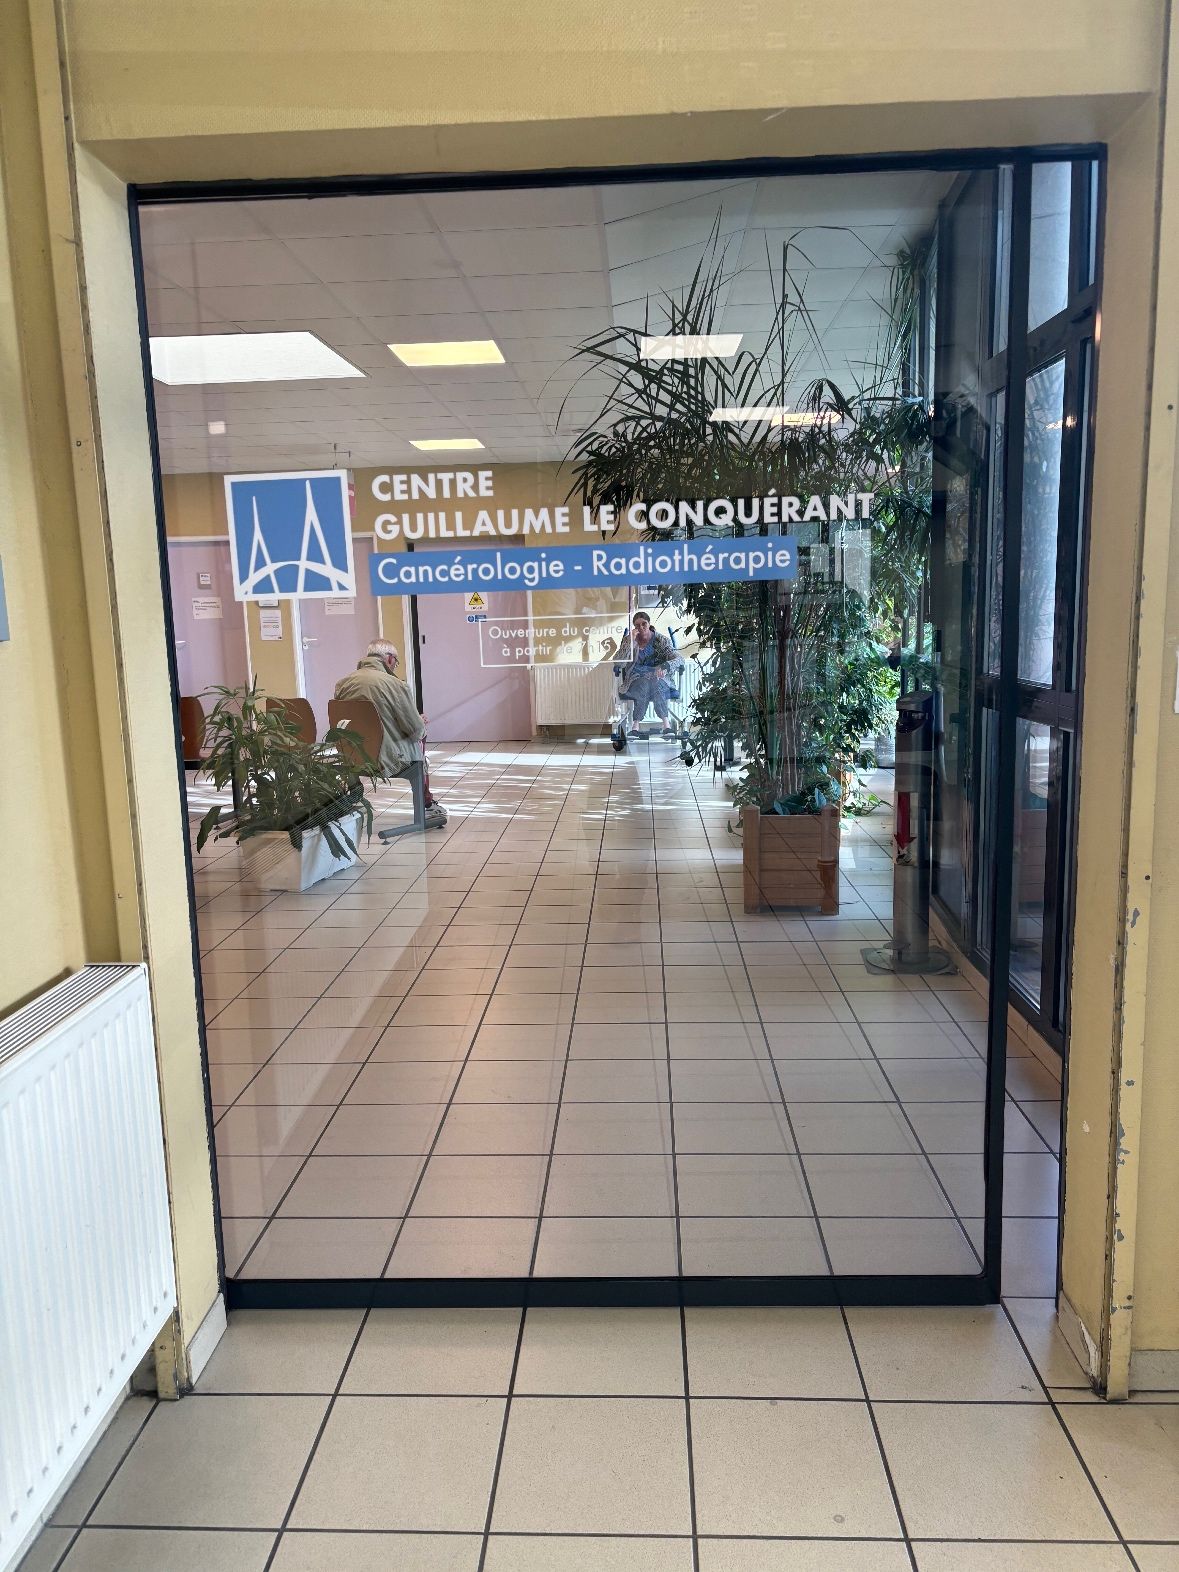 Nouvelle signalétique au Centre de Radiothérapie Guillaume Le Conquérant, Le Havre